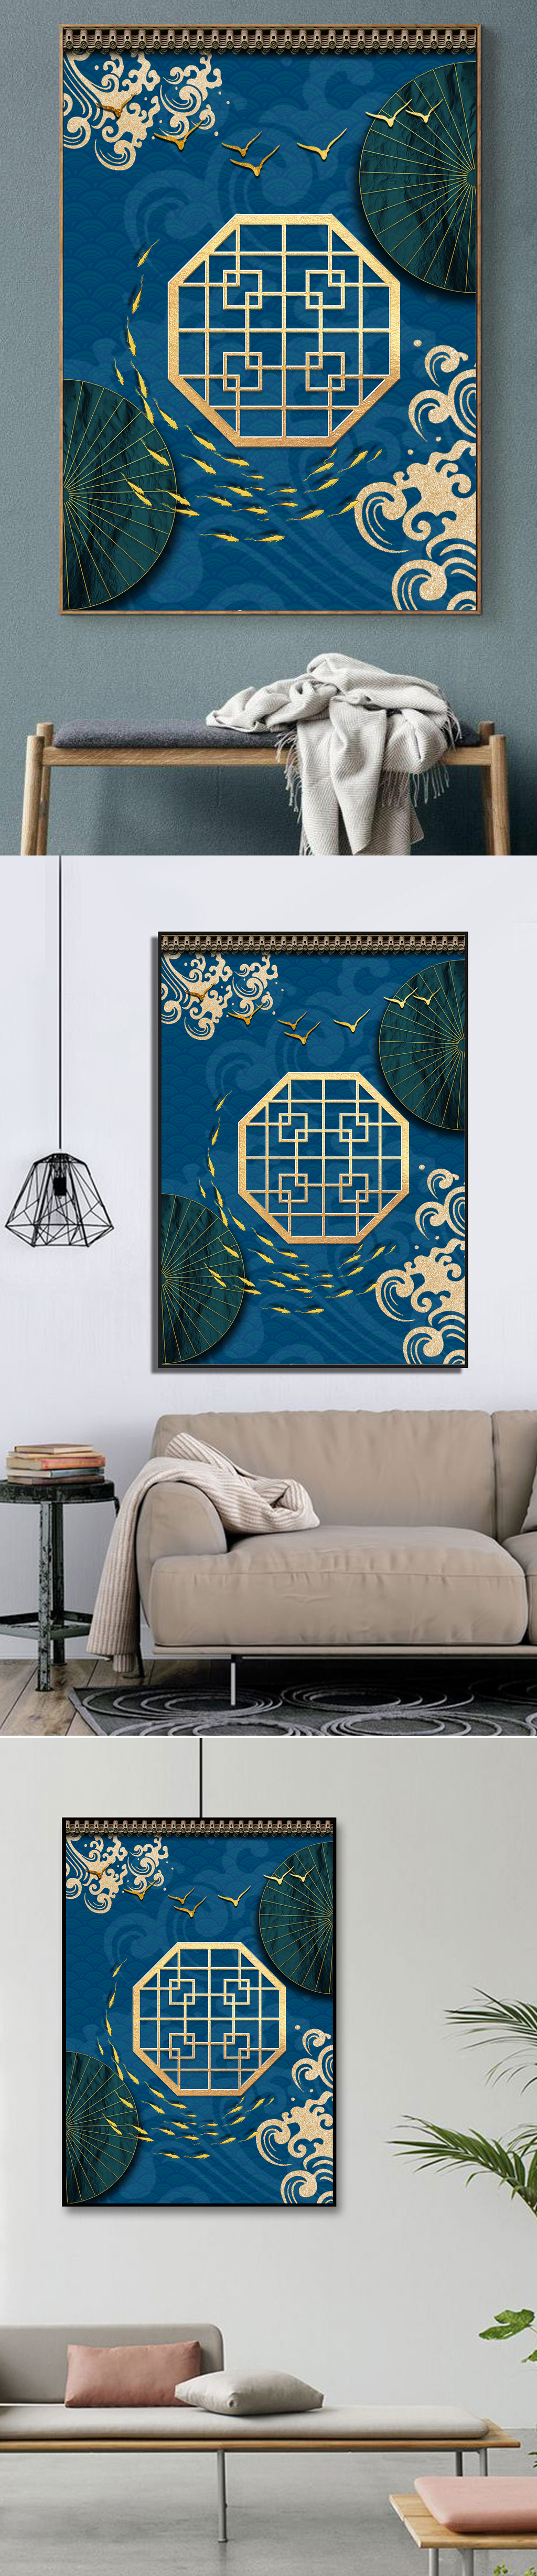 中国风新中式宫廷边框蓝色装饰画图片